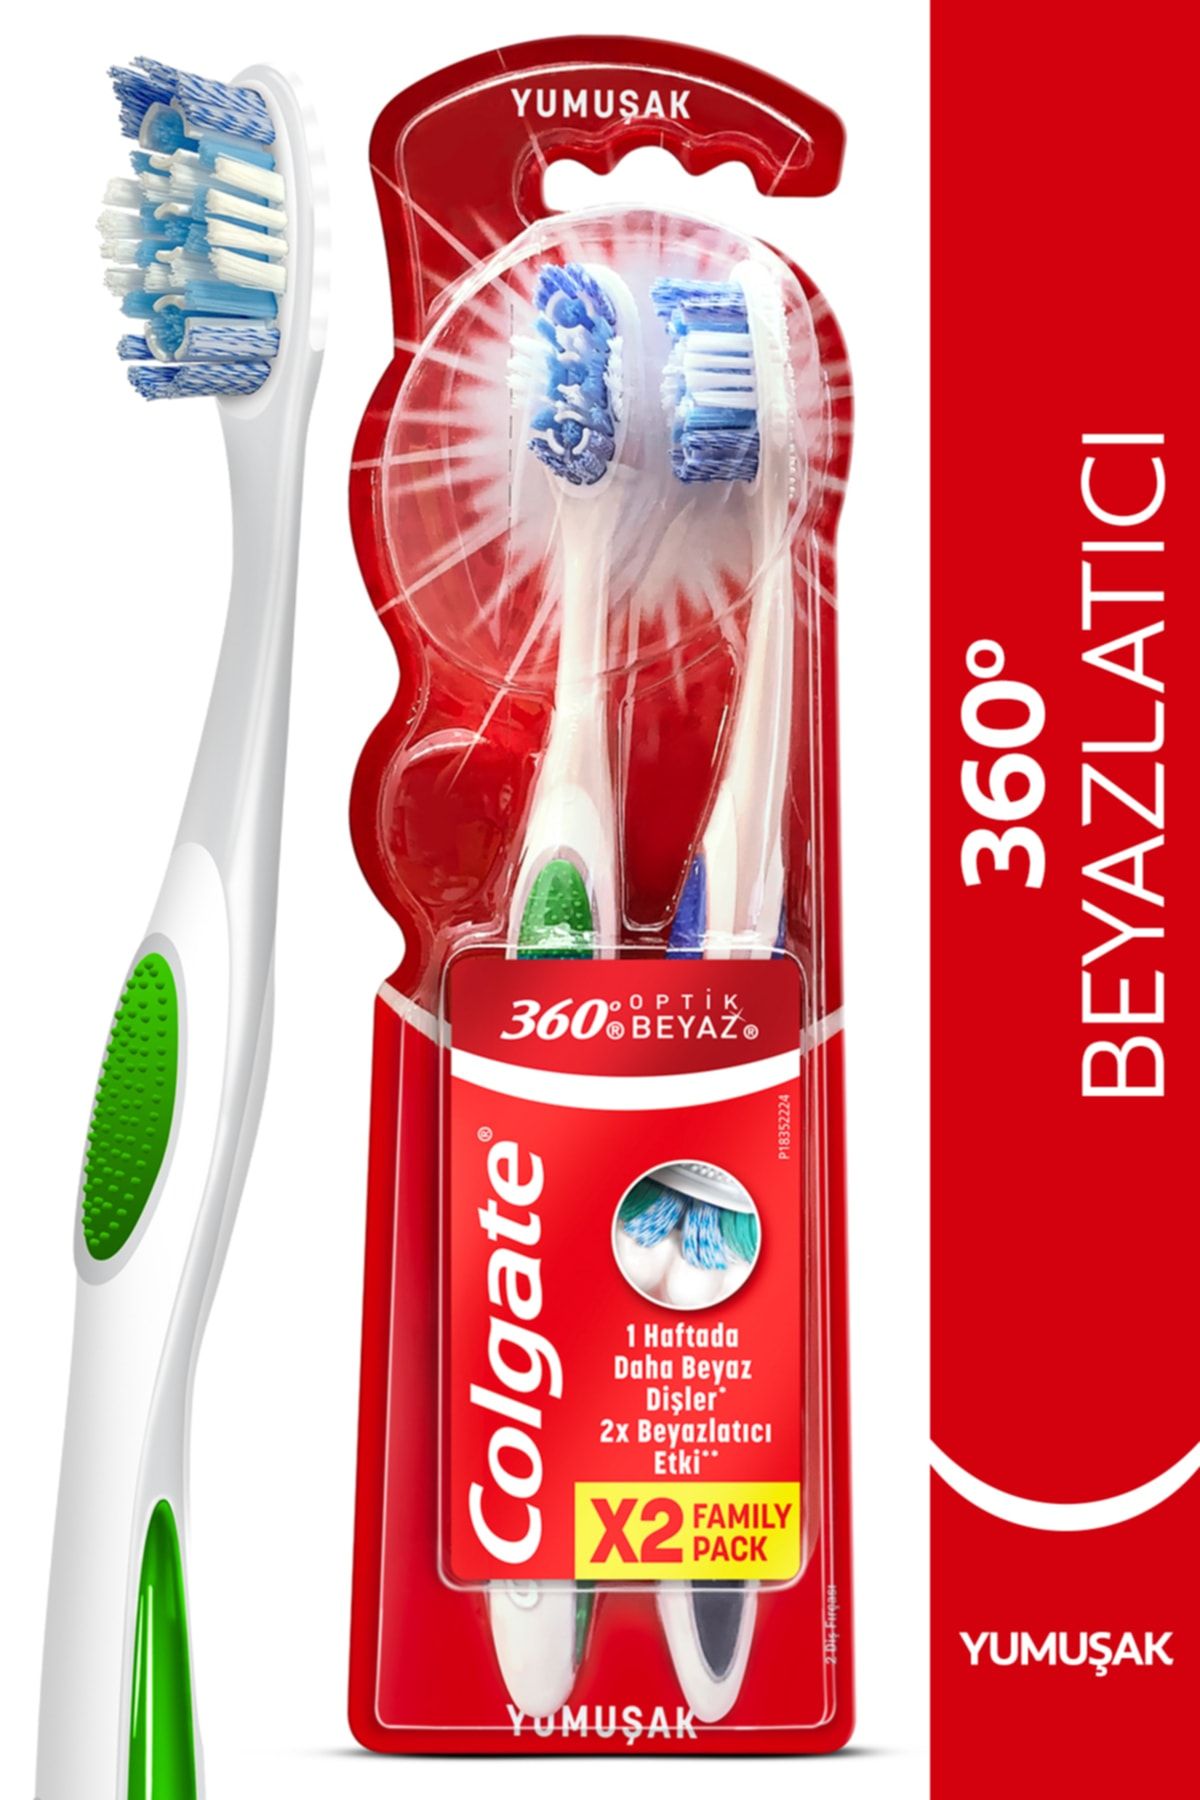 Colgate 360 Optik Beyaz Dil ve Yanak Temizleyicili Yumuşak Beyazlatıcı Diş Fırçası 1+1